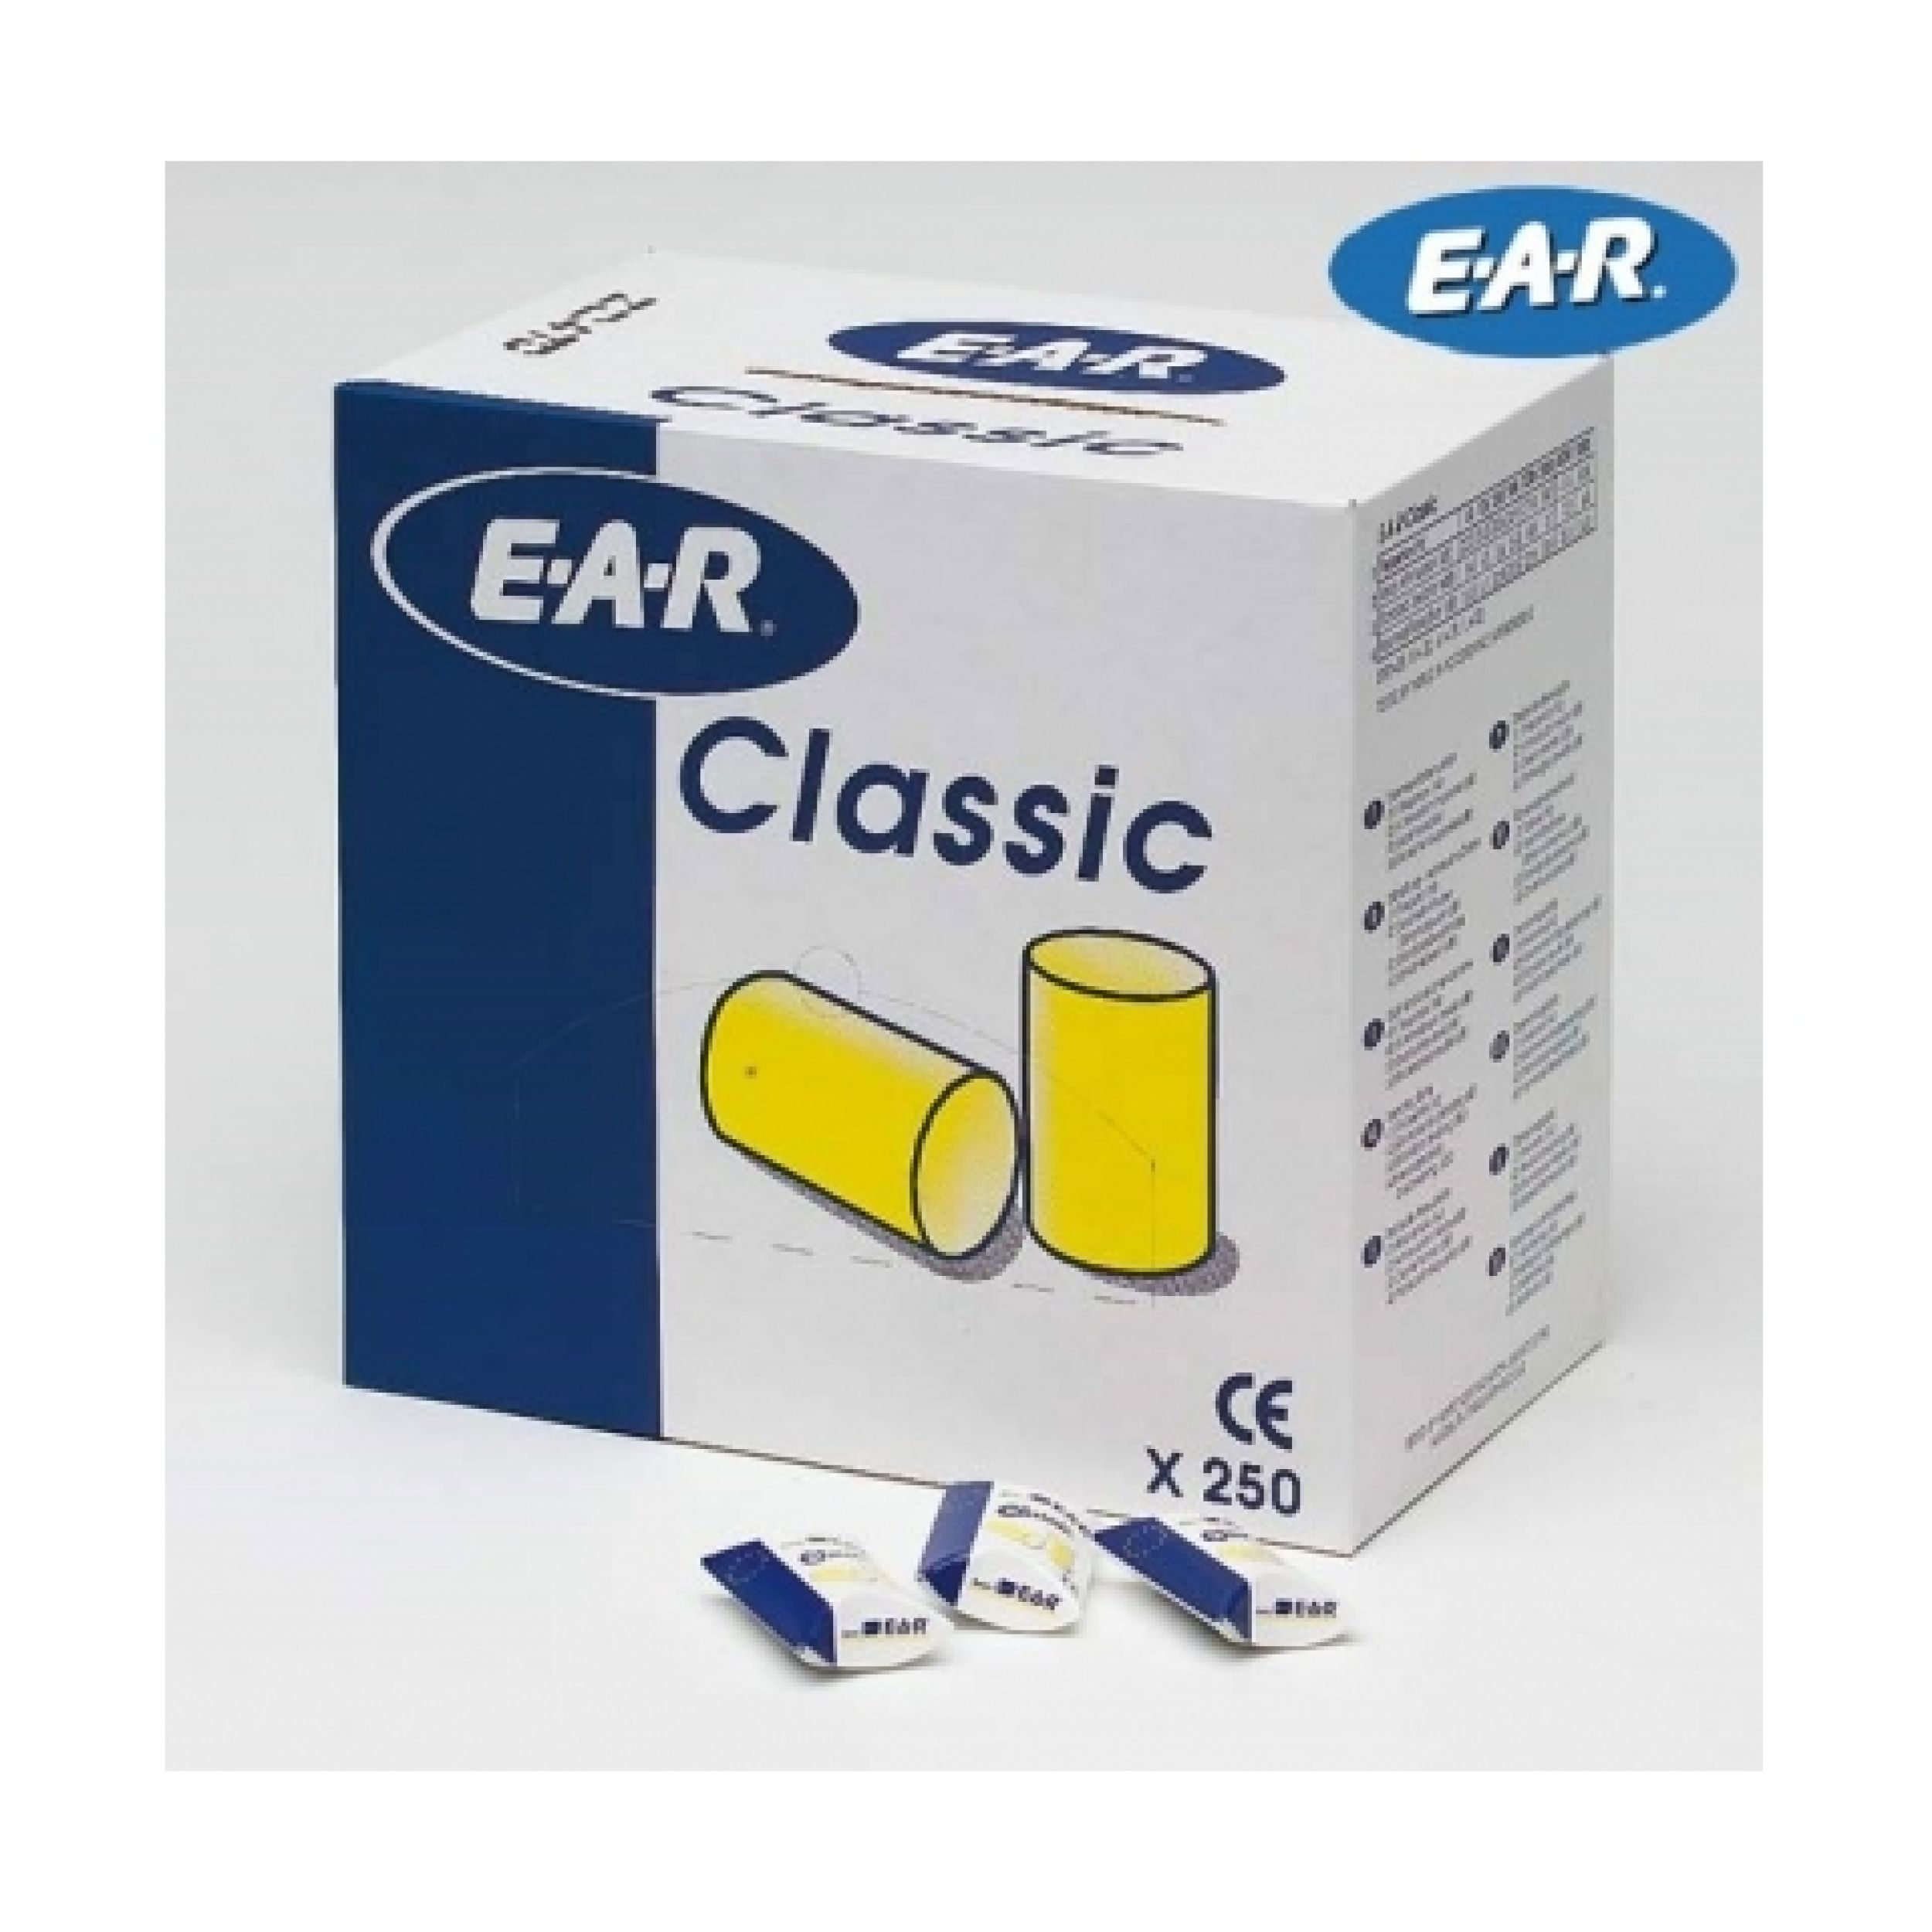 Ear Classic